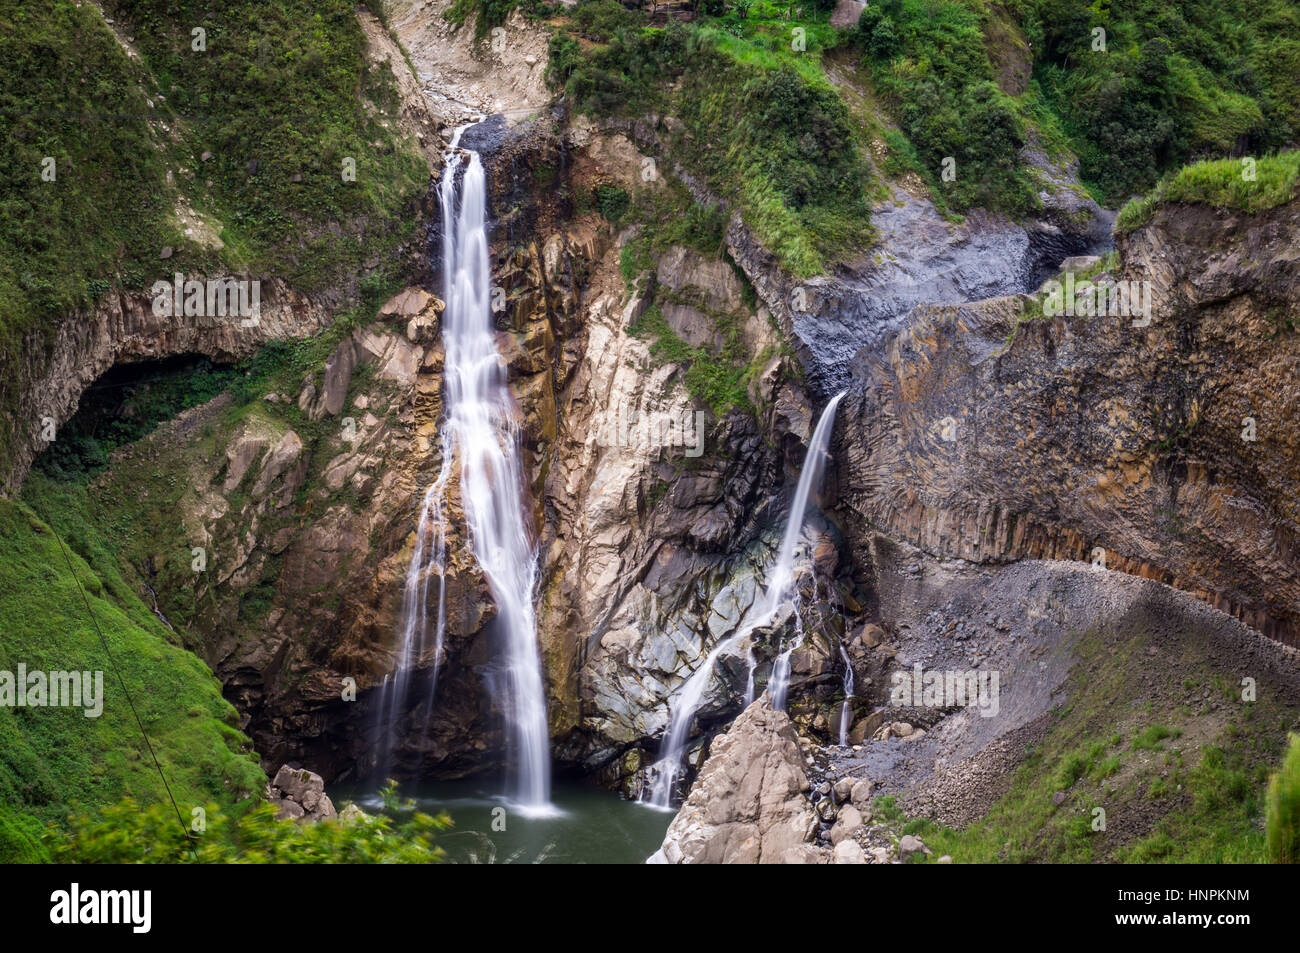 Waterfalls in Banos, Ecuador Stock Photo